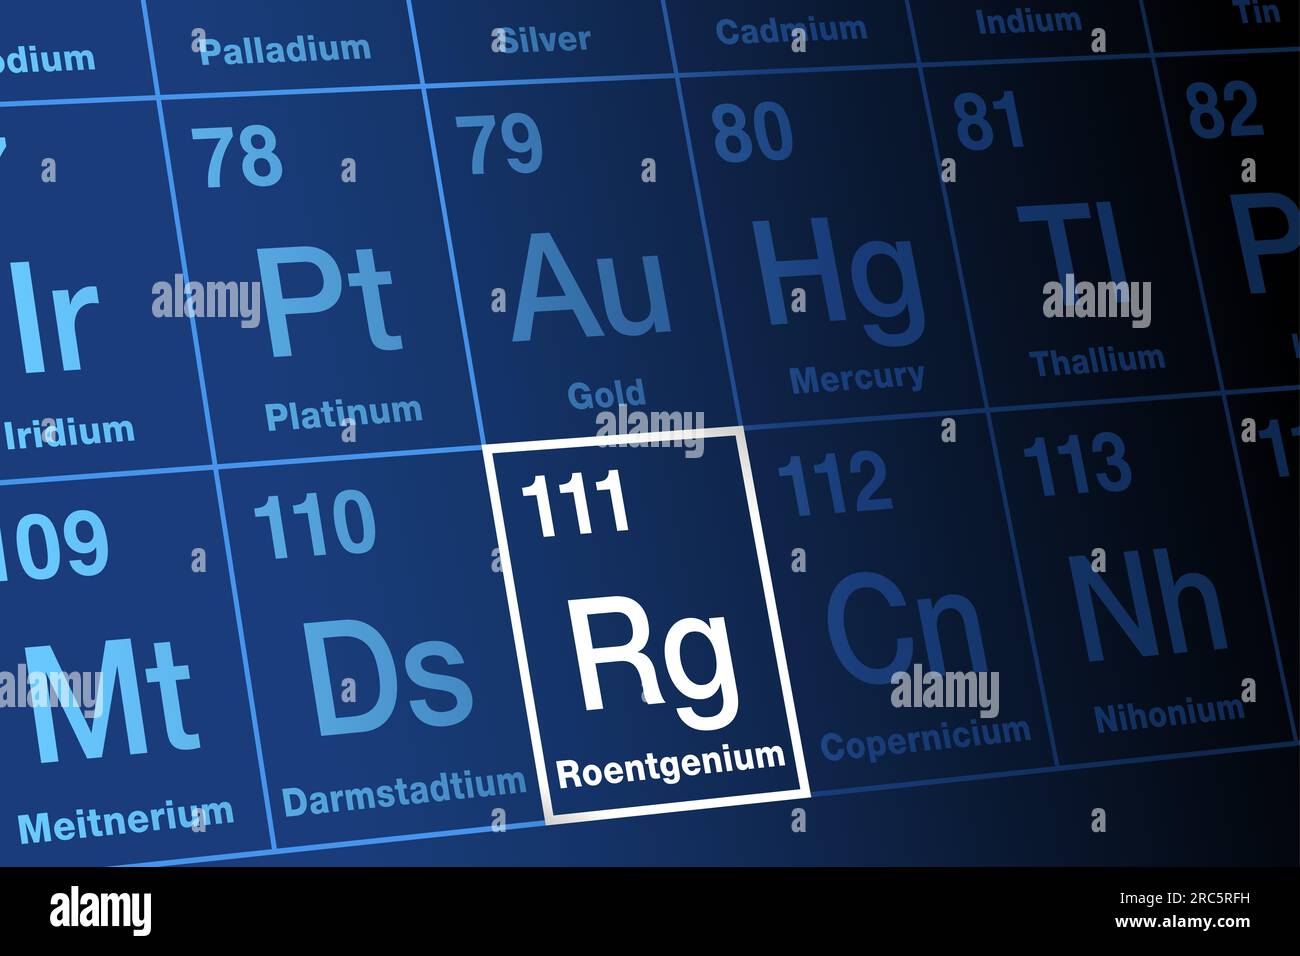 Das Röntgenium im Periodensystem der Elemente. Extrem radioaktives, superschweres, synthetisches Transaktinid-Element, mit Elementsymbol RG. Stockfoto